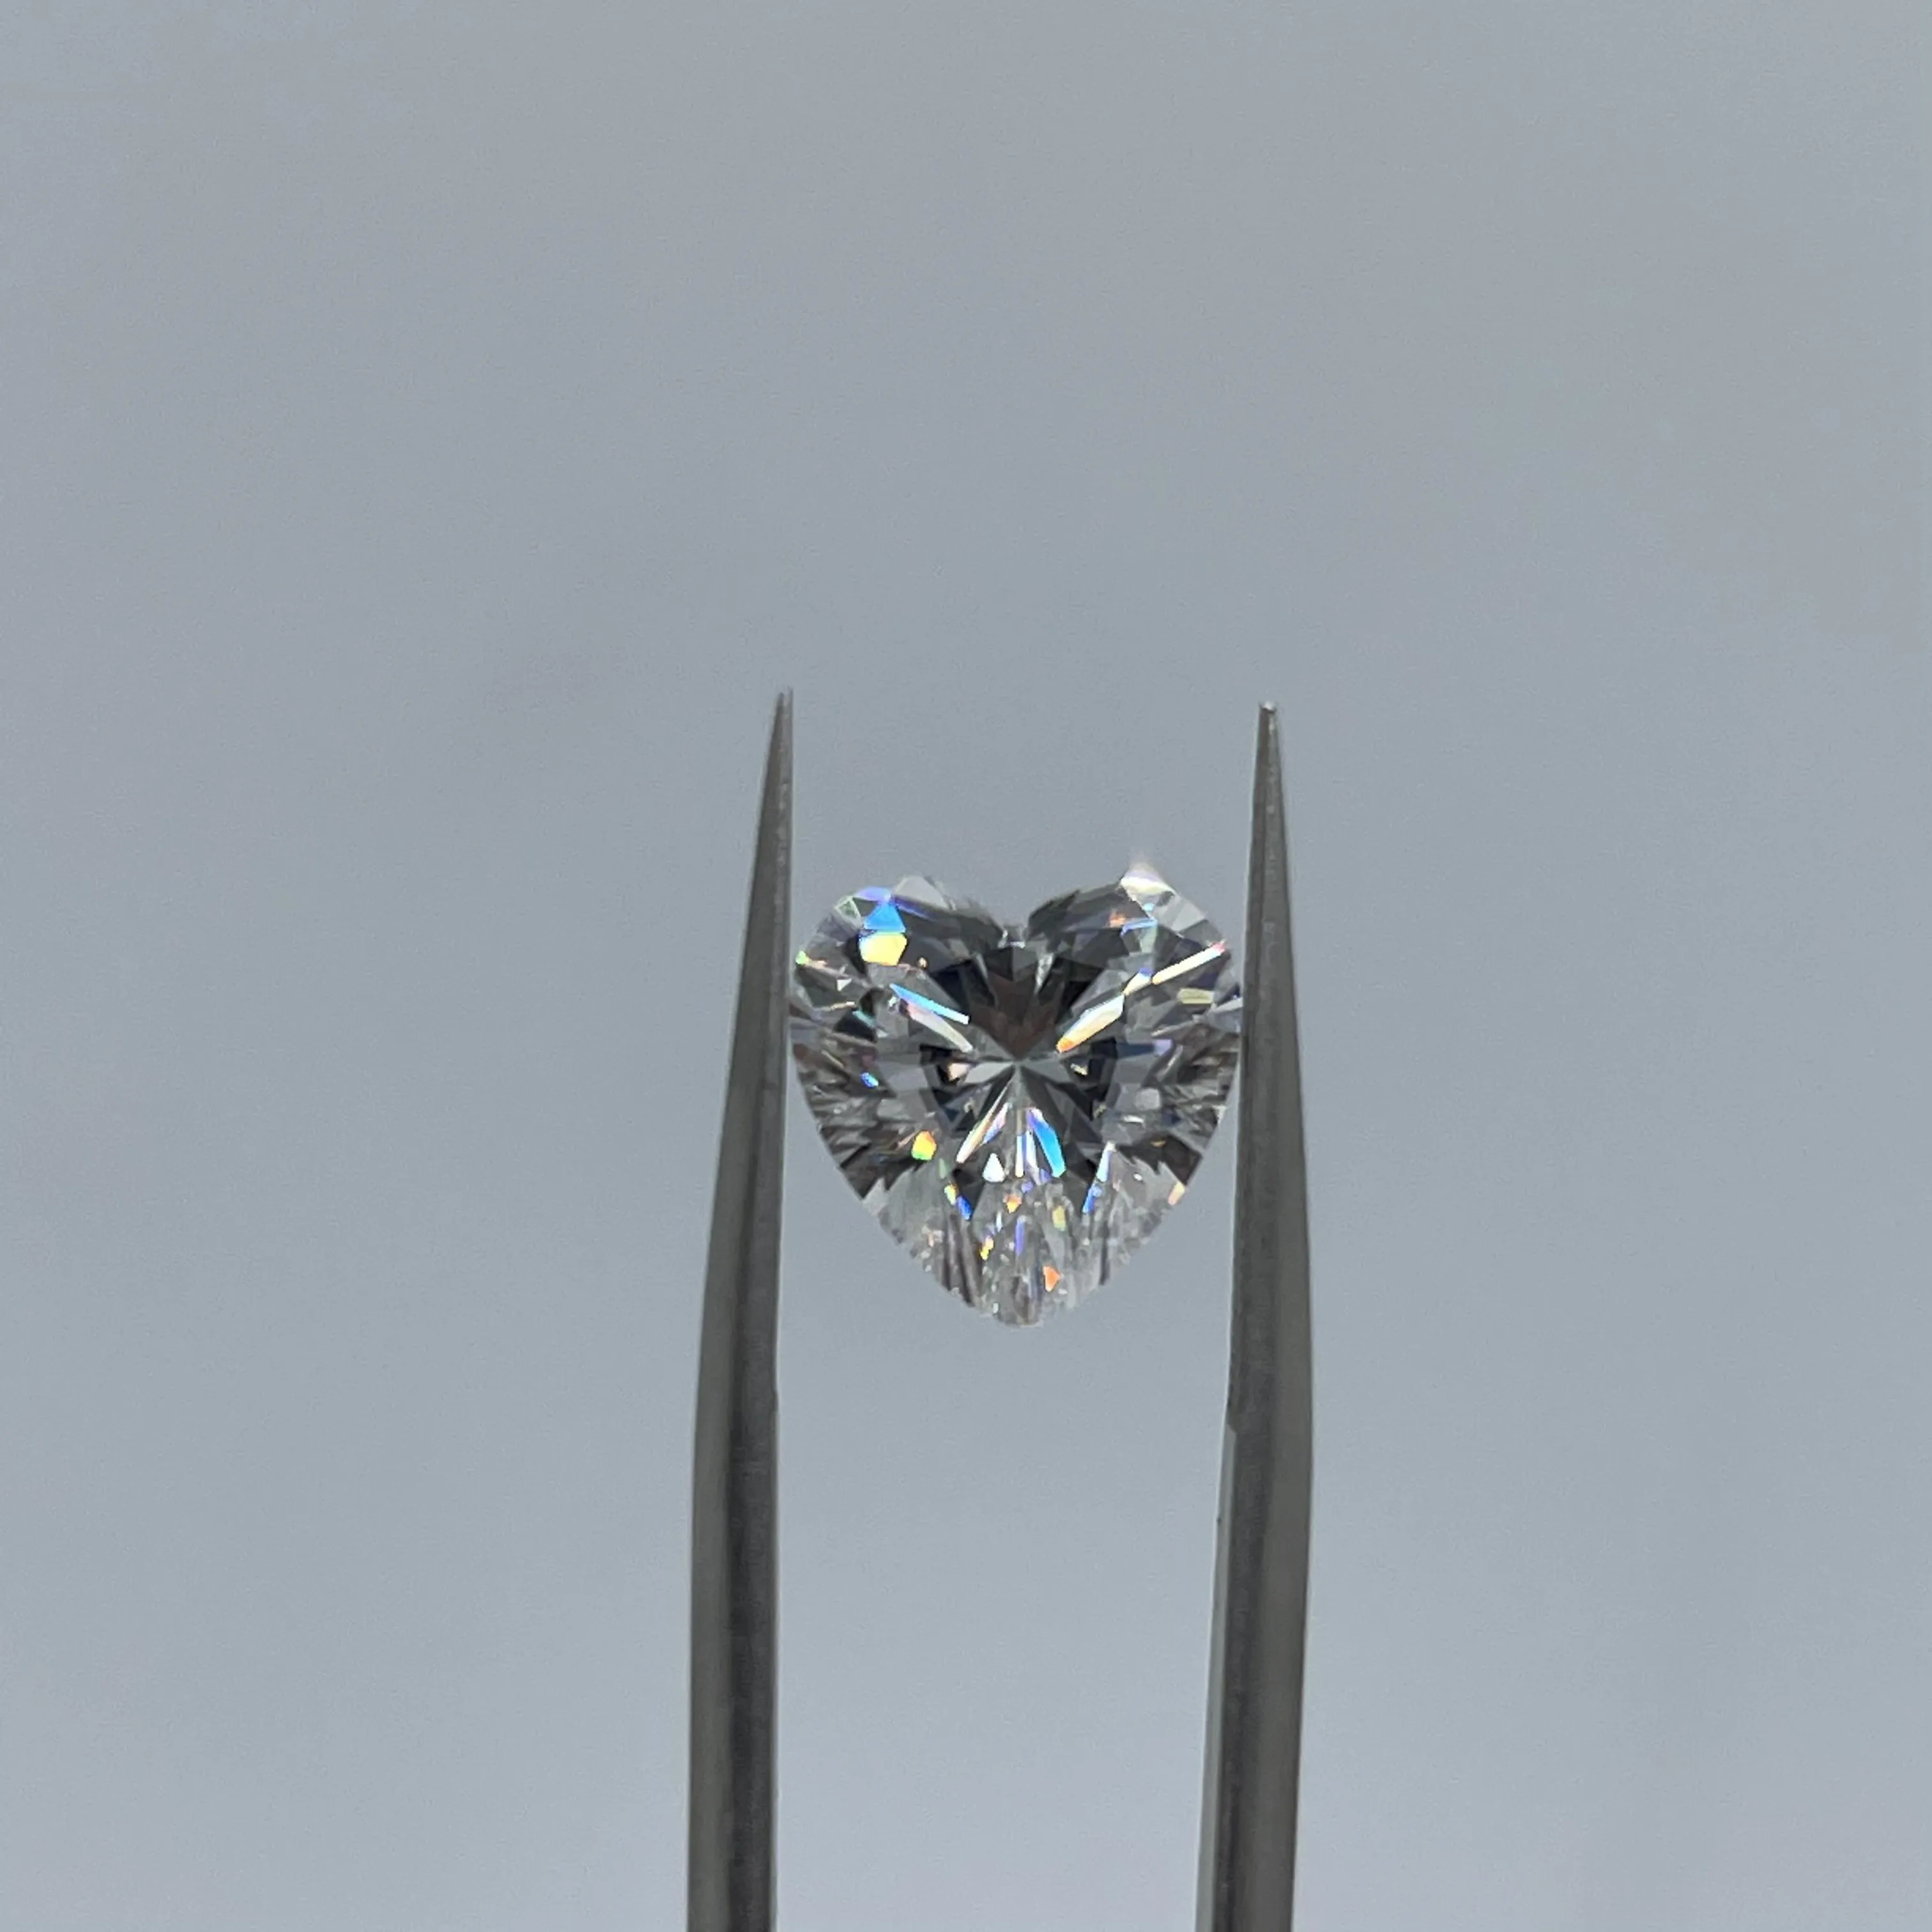 Lotusmaple 0,1ct - 4ct hjärtskärande felfri D färg glittrande handgjorda Moissanite diamant passera testet var och en ≥0,5ct inklusive ett gratis GRA -certifikatpapper arbete